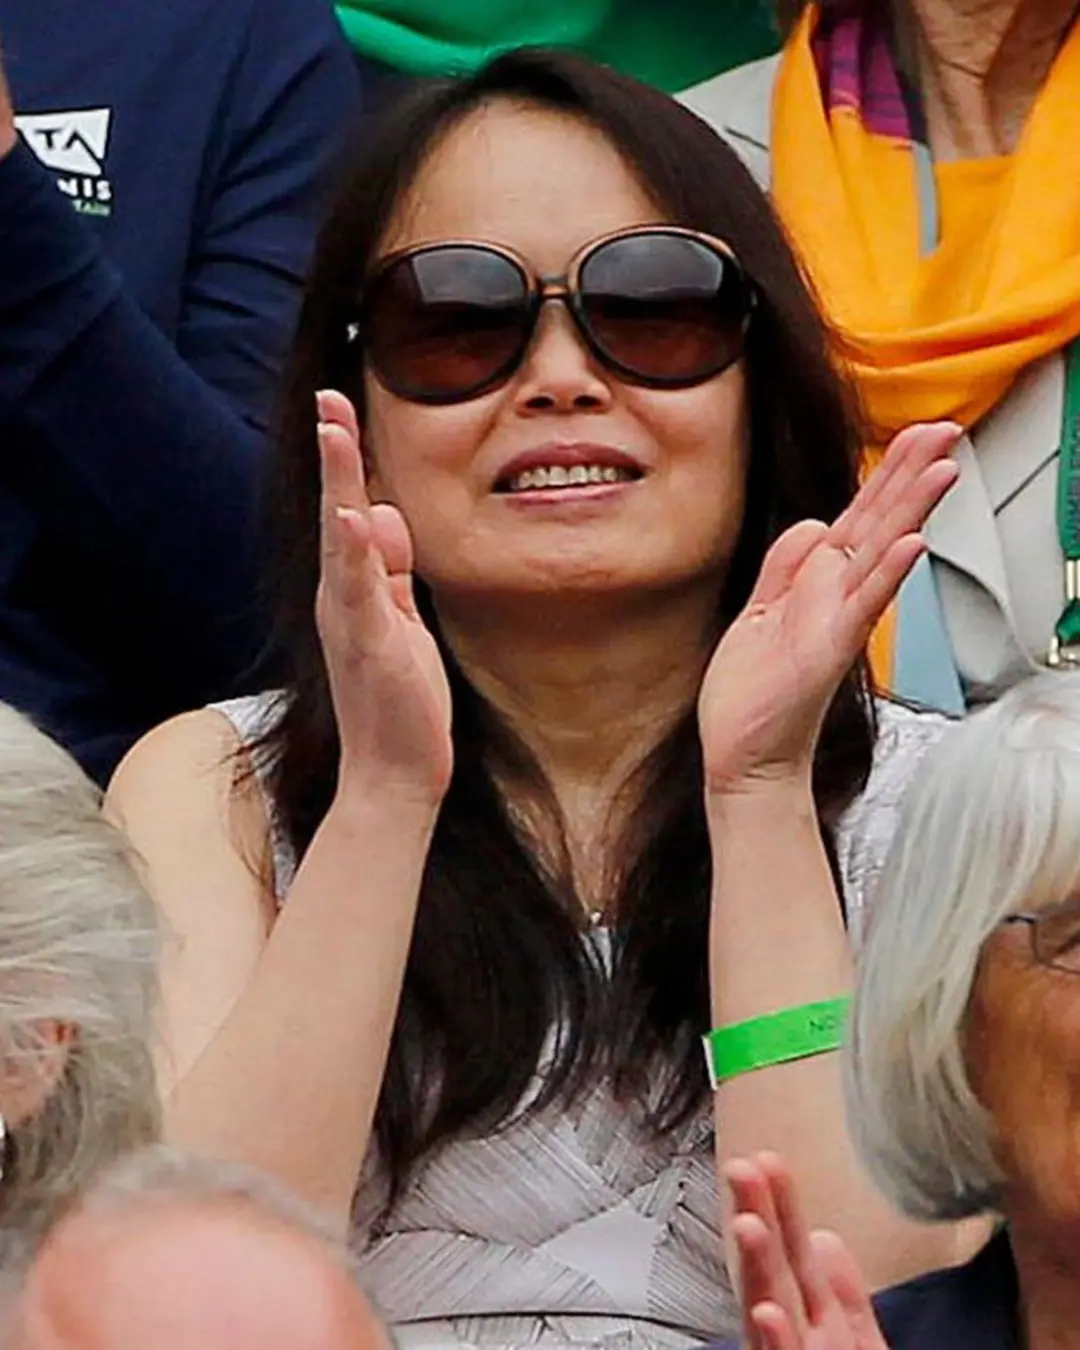 为了她们而表扬，这两个英国的华裔女性很值得表扬。